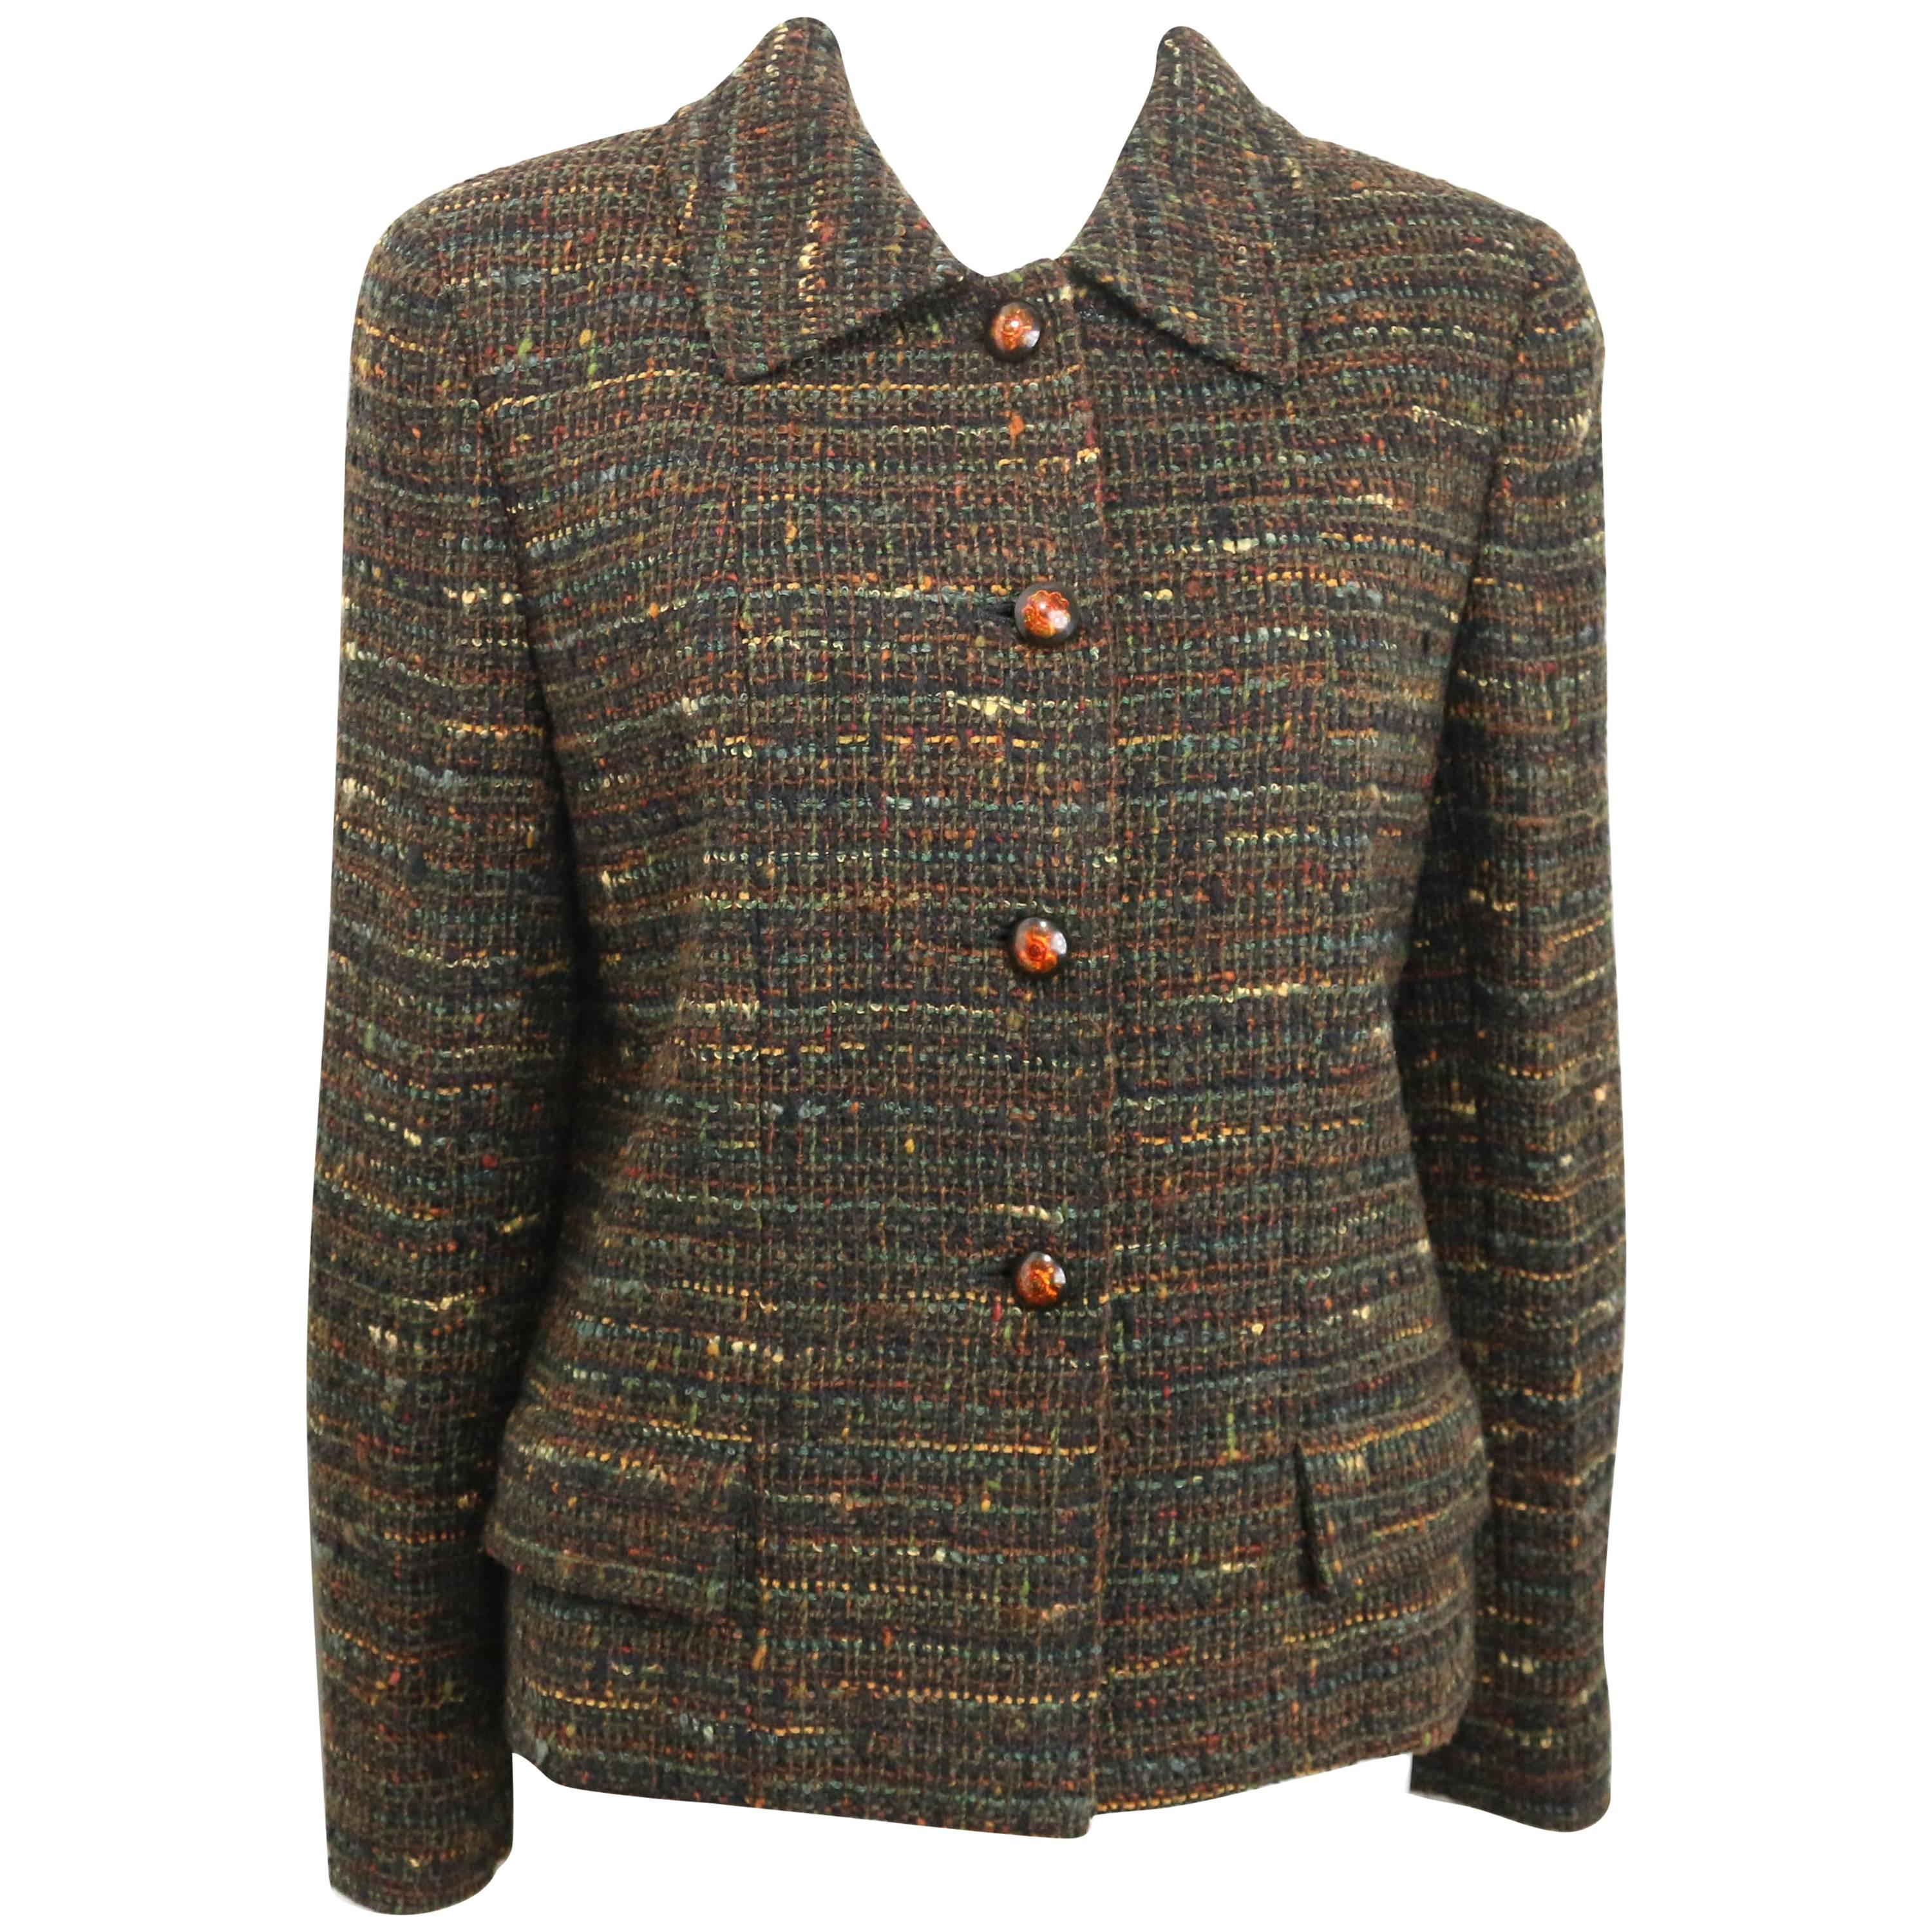 - Vintage Chanel braun mehrfarbig (grün, braun, schwarz, etc...) beschnitten Tweed-Jacke aus 1998 A / W-Kollektion. Mit vier orangefarbenen Kamelienblüten-Knöpfen zum Verschließen und zwei Pattentaschen an jeder Manschette. 

- Hergestellt in